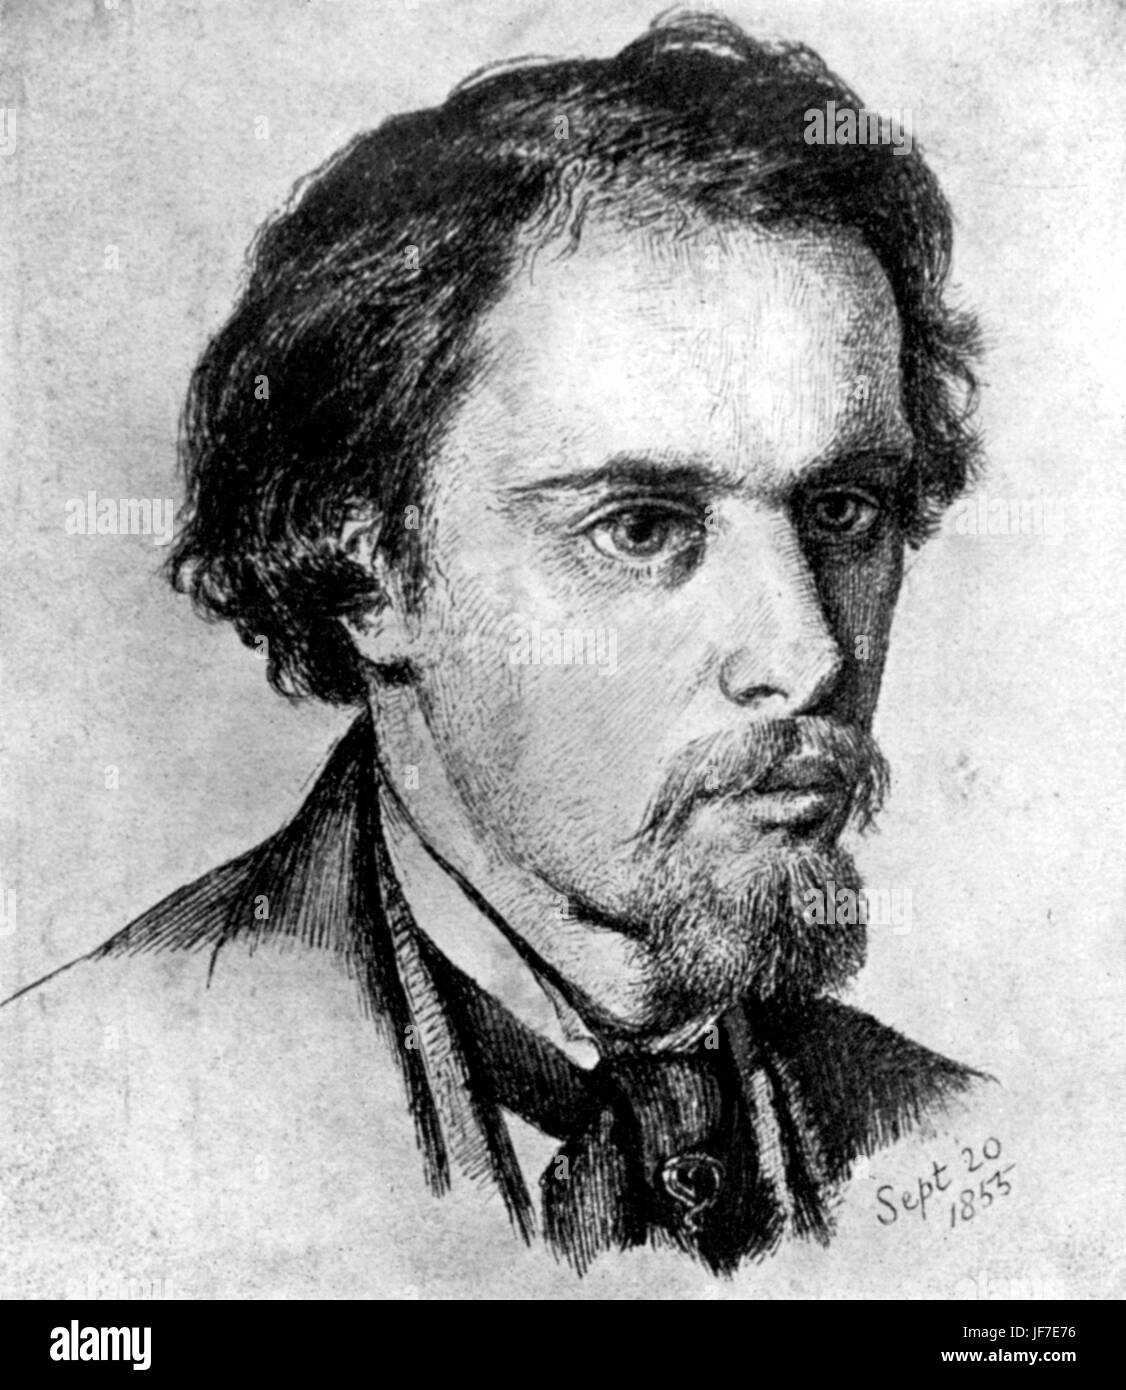 Dante Gabriel Rossetti, Portrait von sich selbst. Englischer Dichter, Maler und Übersetzer. 12. Mai 1828 - 10. April 1882 Stockfoto